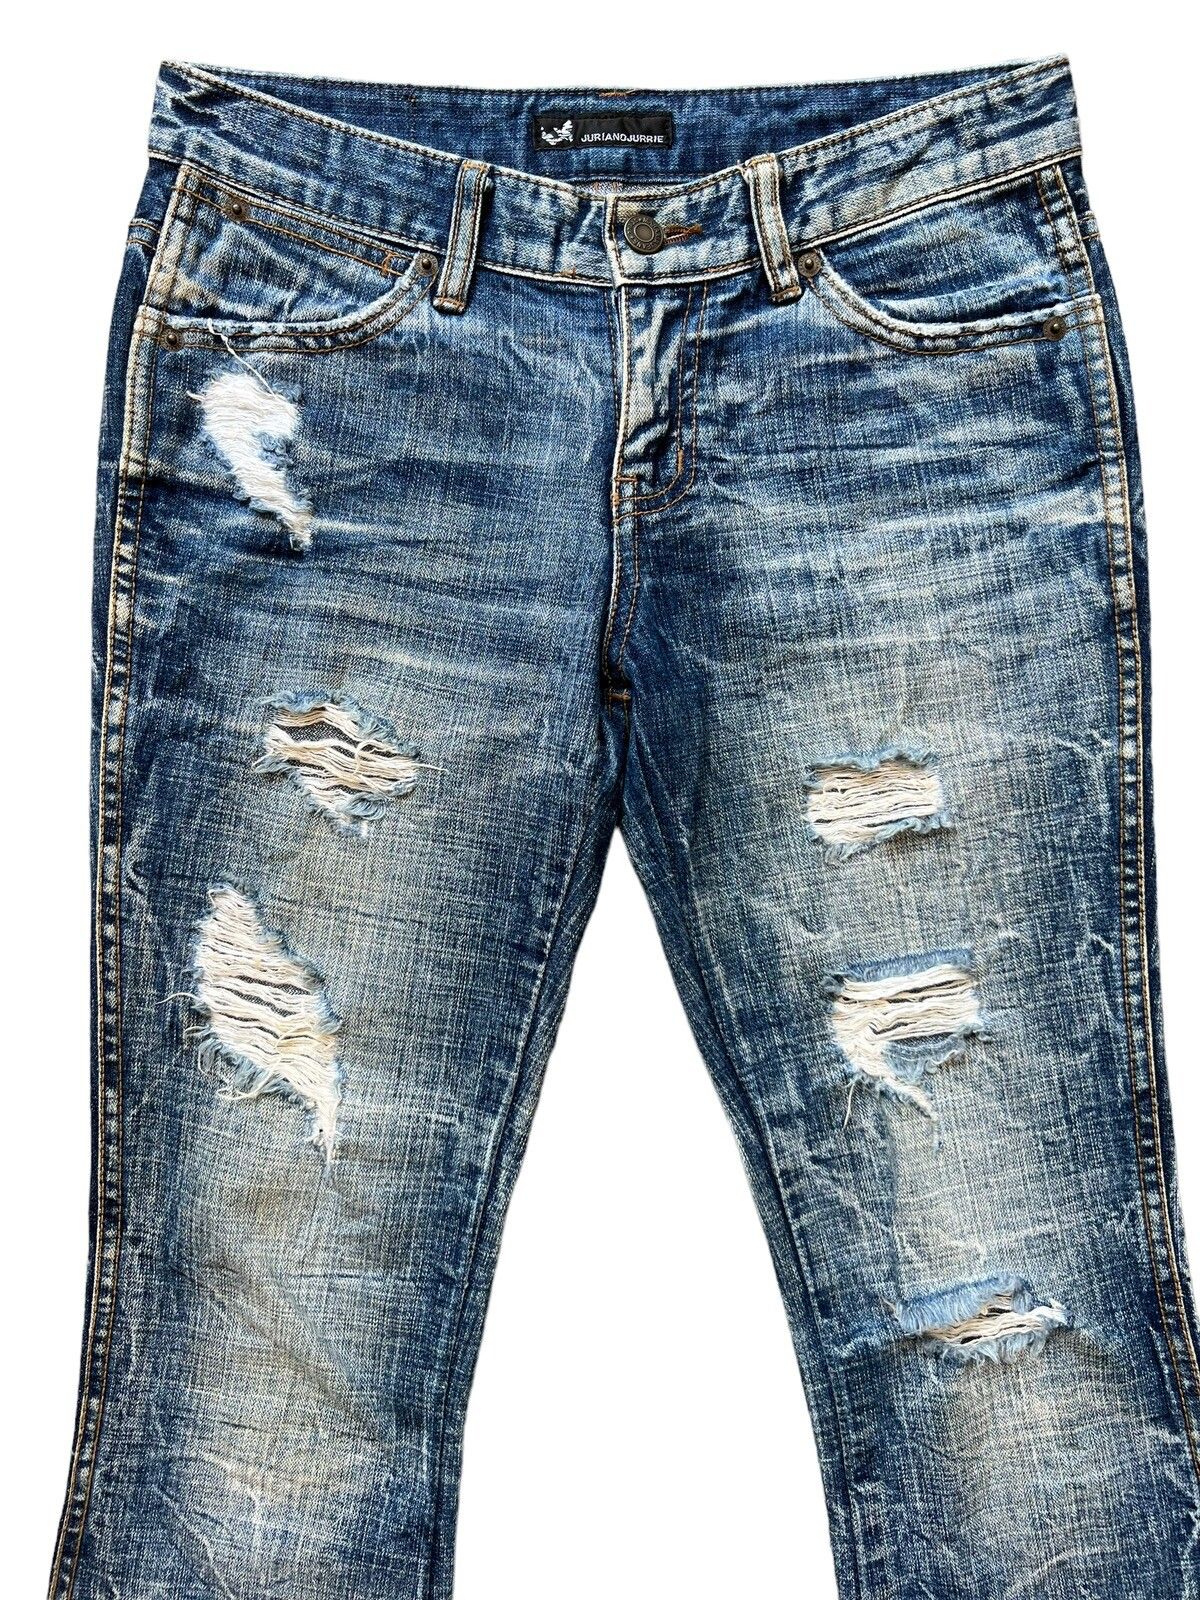 Distressed Denim - Juriano Jurrie Distressed Boot Cut Flare Denim Jeans 29x31 - 4